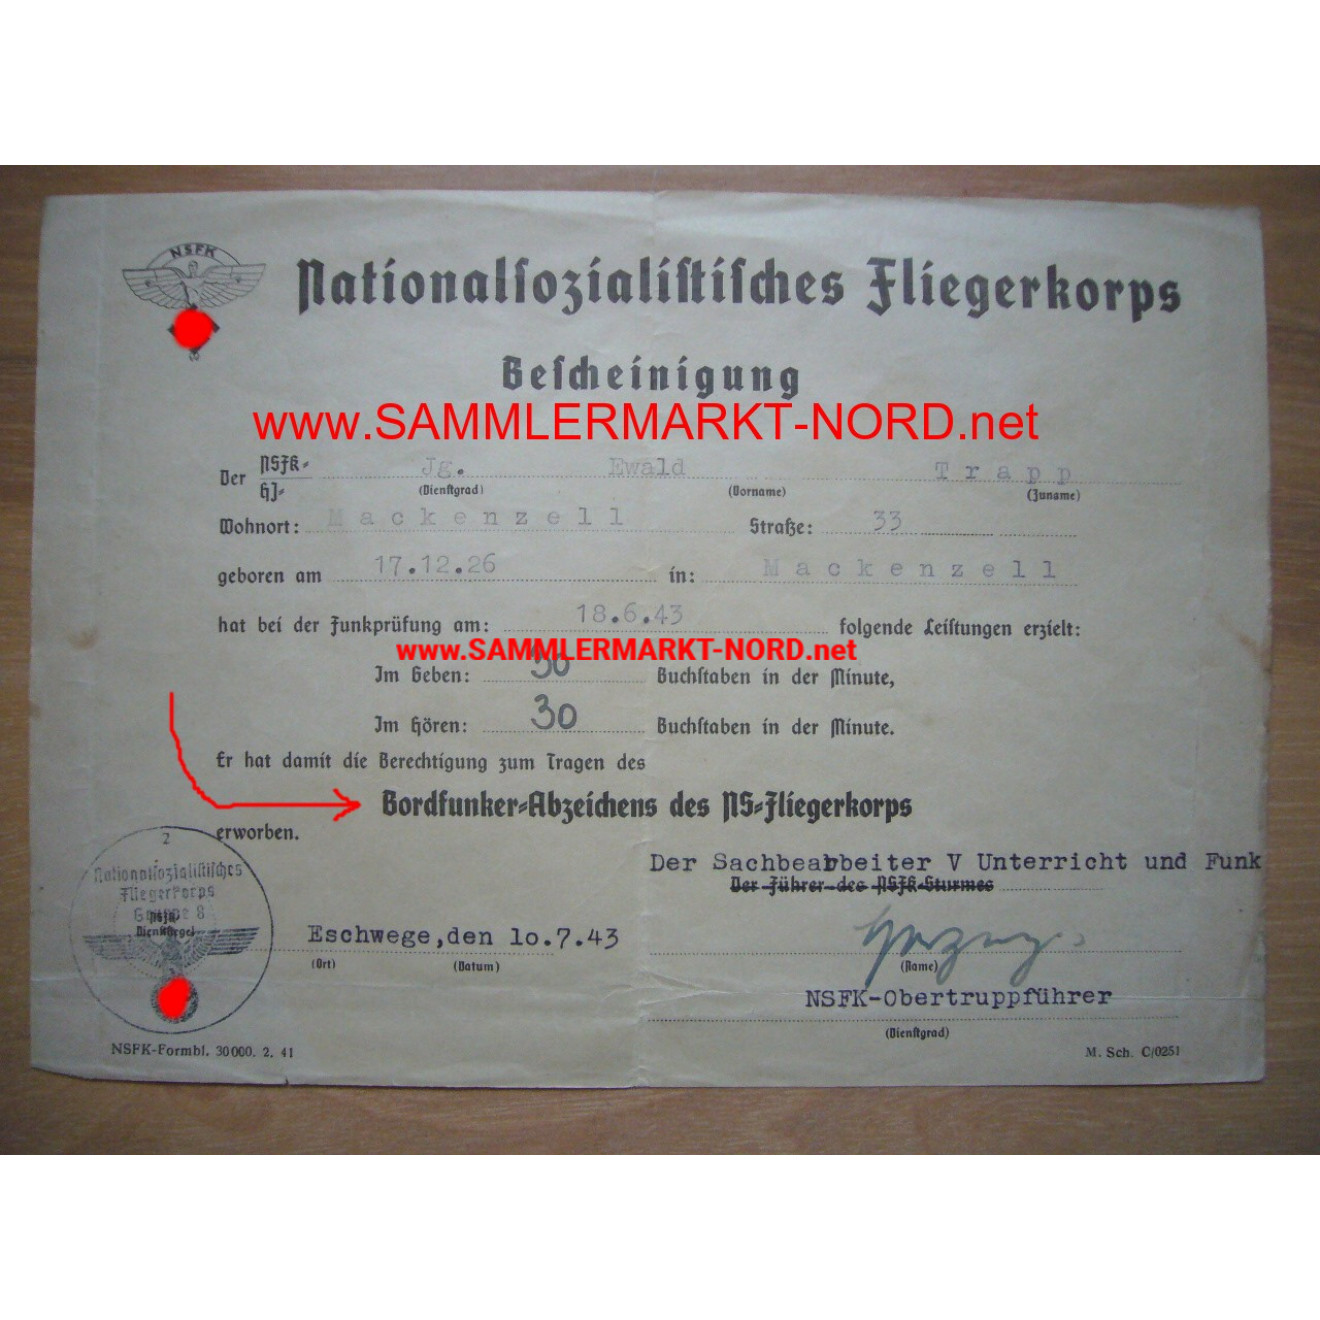 NSKK award certificate for the NSFK Wireless Communicator Badge